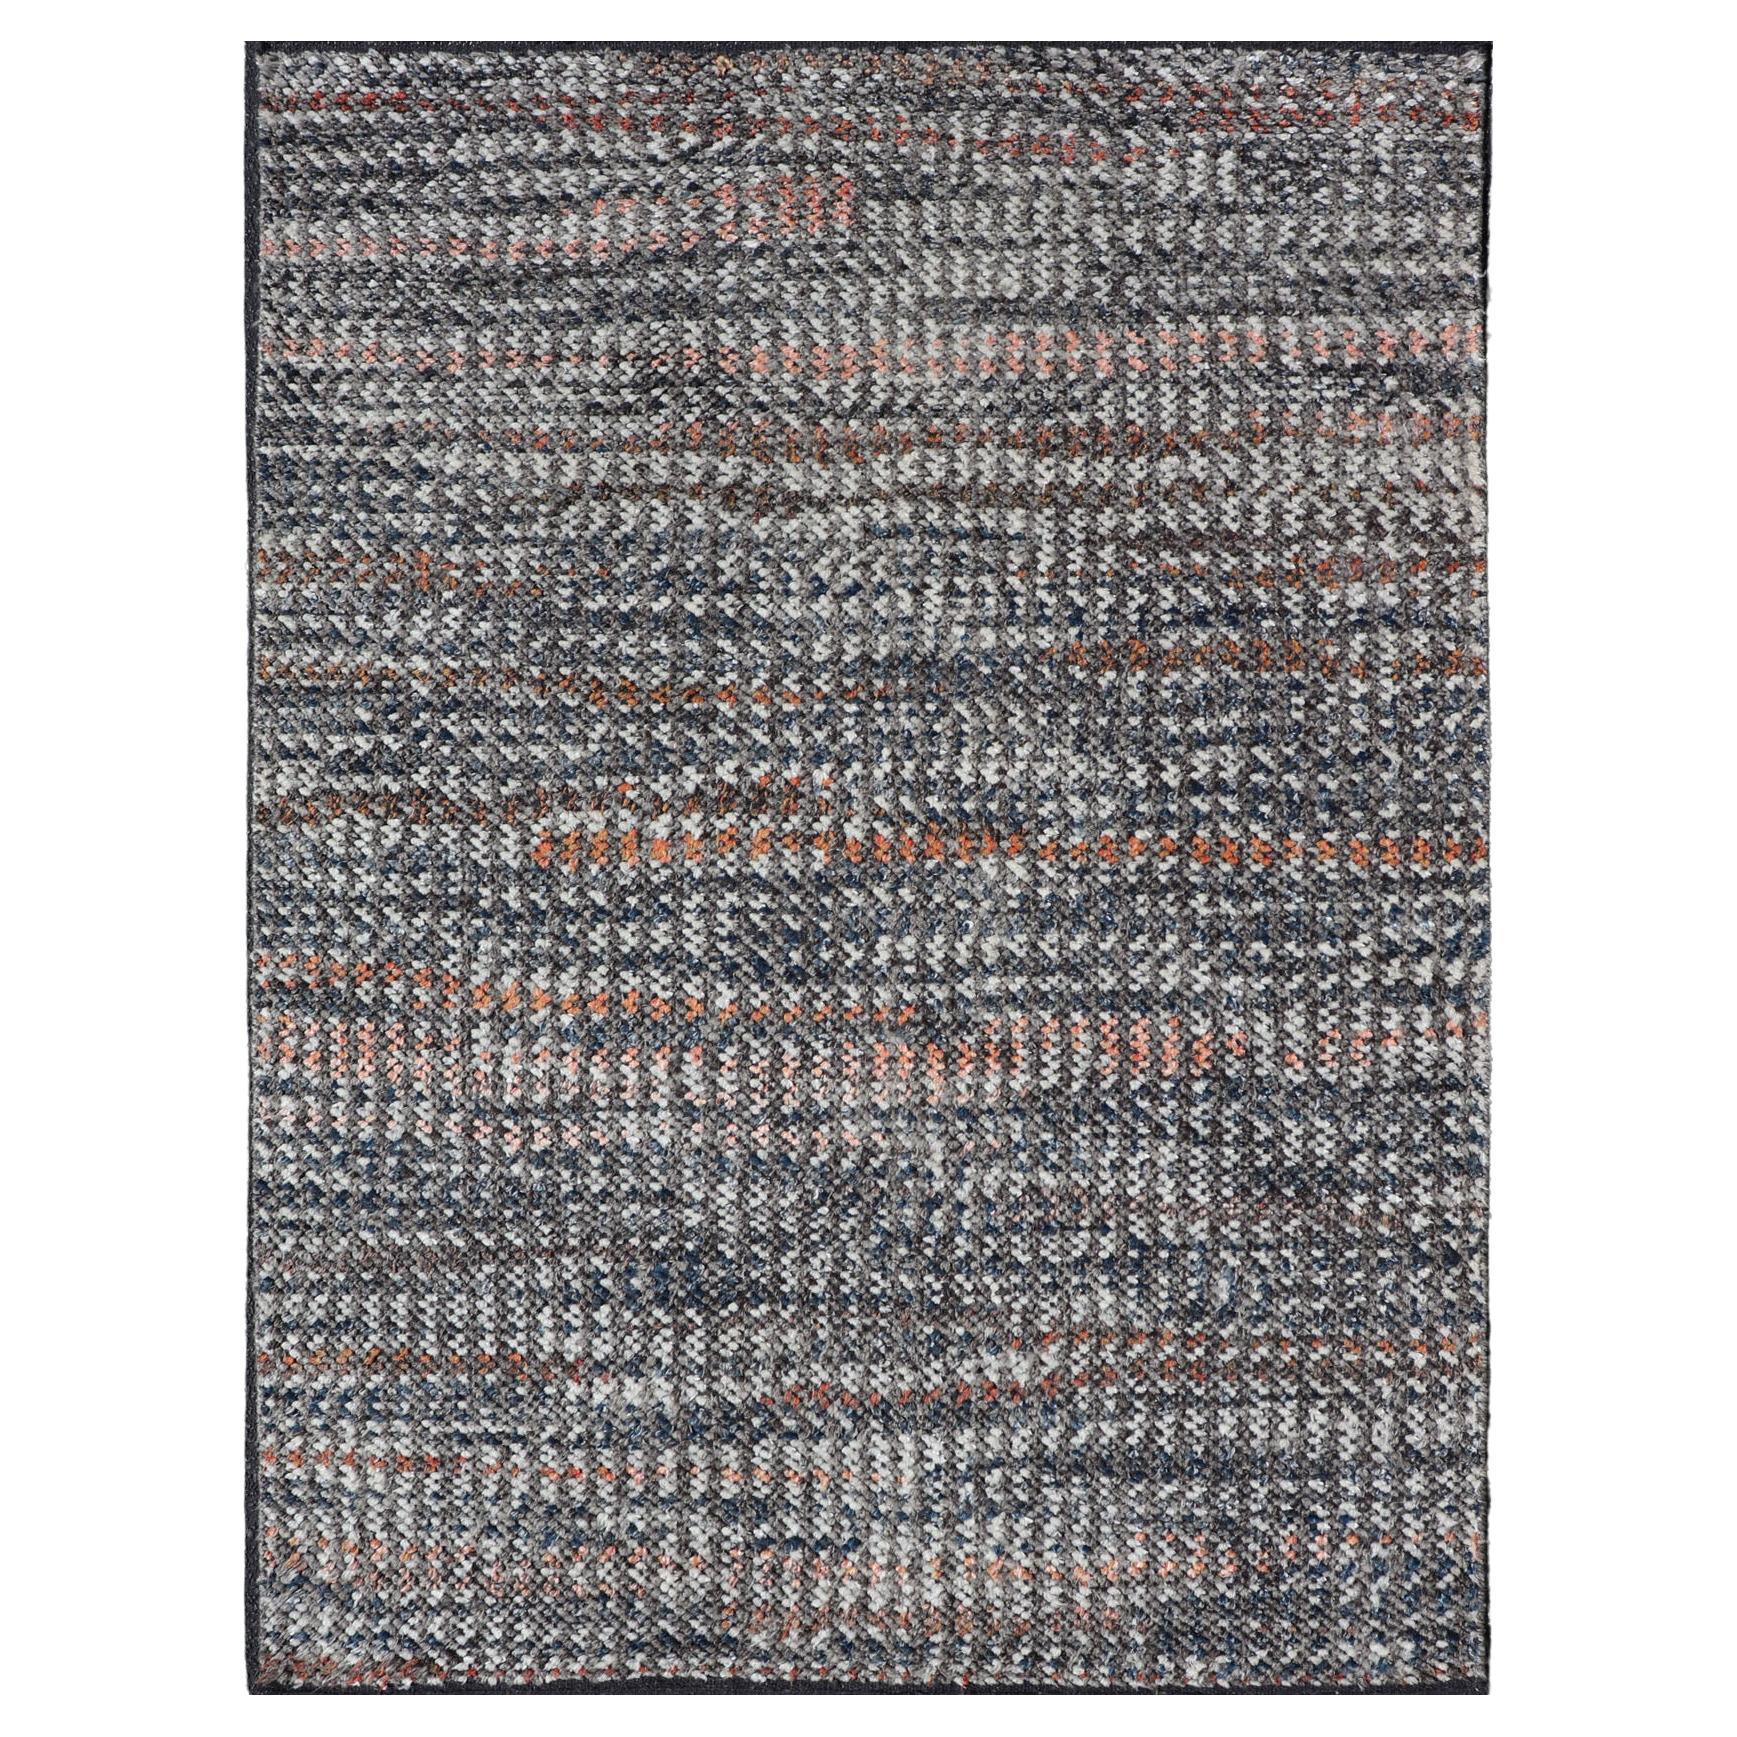 Moderner handgeknüpfter abstrakter Teppich in mehrfarbigem und All-Over-Design